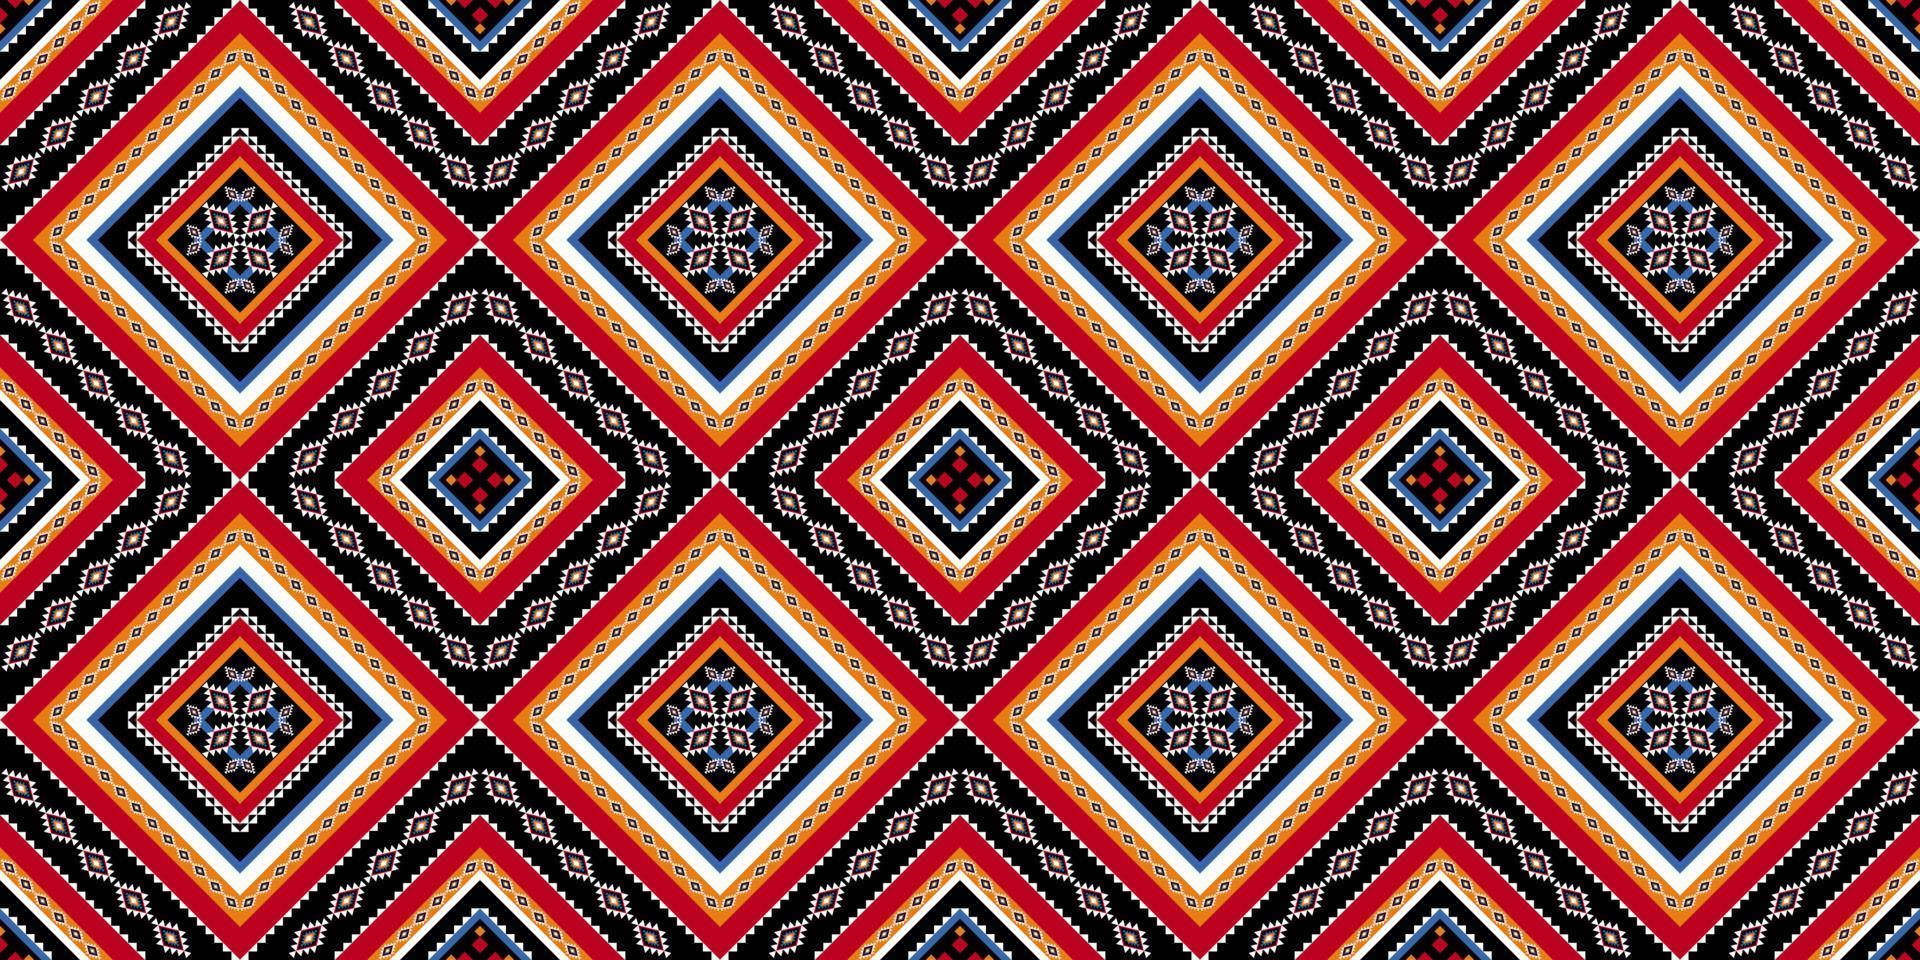 arte abstrata padrão étnico. sem costura padrão em bordados tribais, folclóricos e estilo mexicano. listrado geométrico. design para plano de fundo, papel de parede, ilustração vetorial, tecido, roupas, tapete. vetor